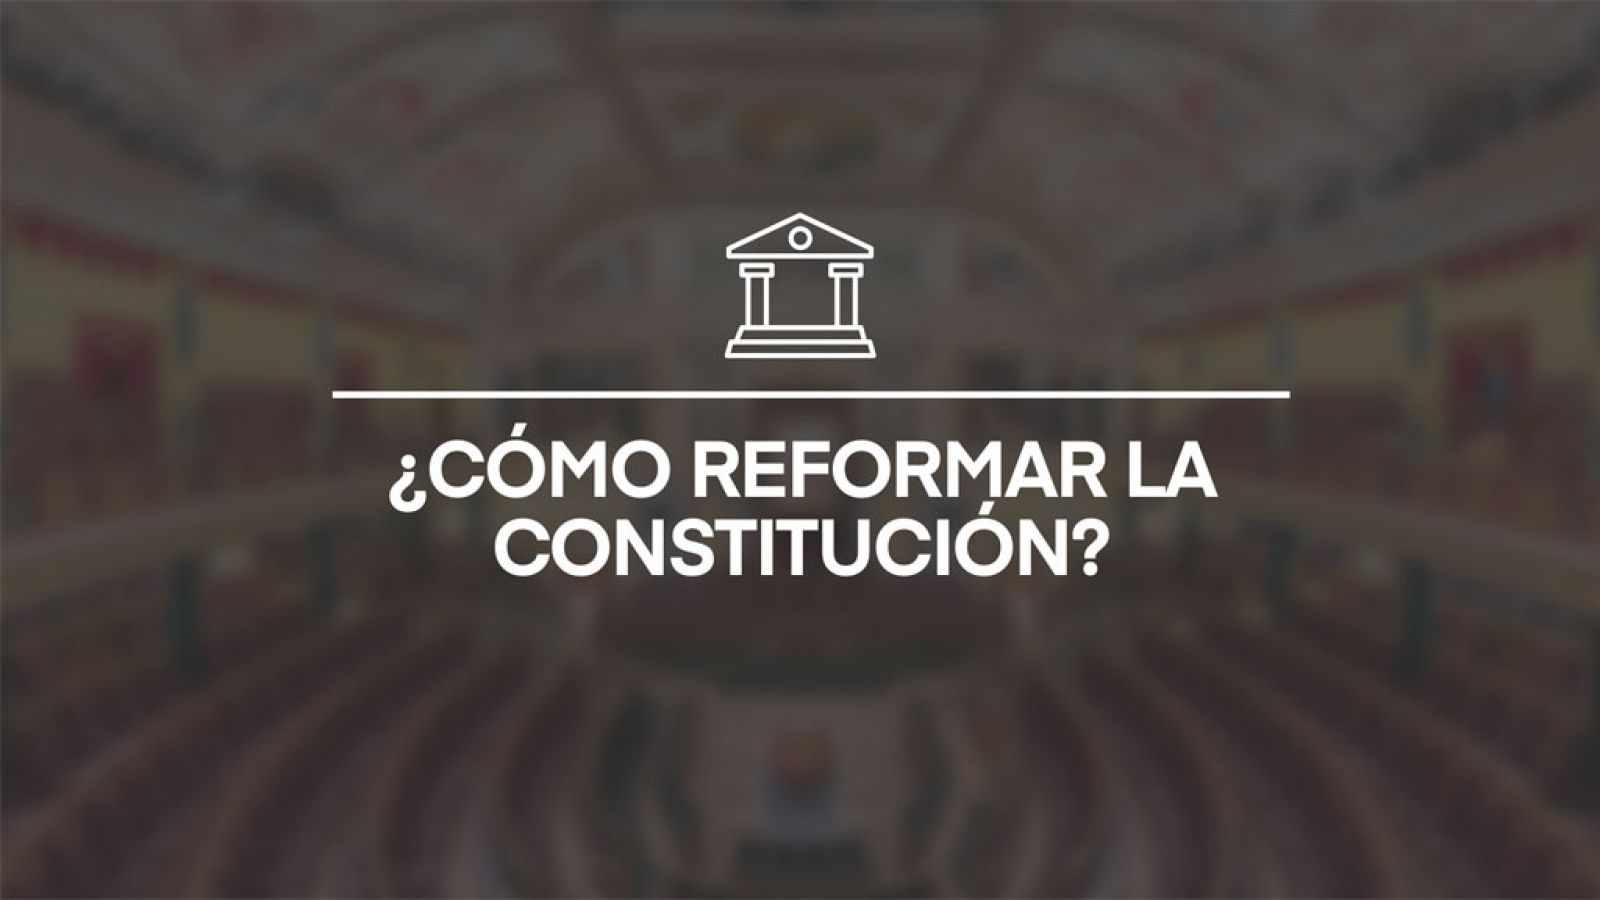 ¿Cómo reformar la Constitución española?